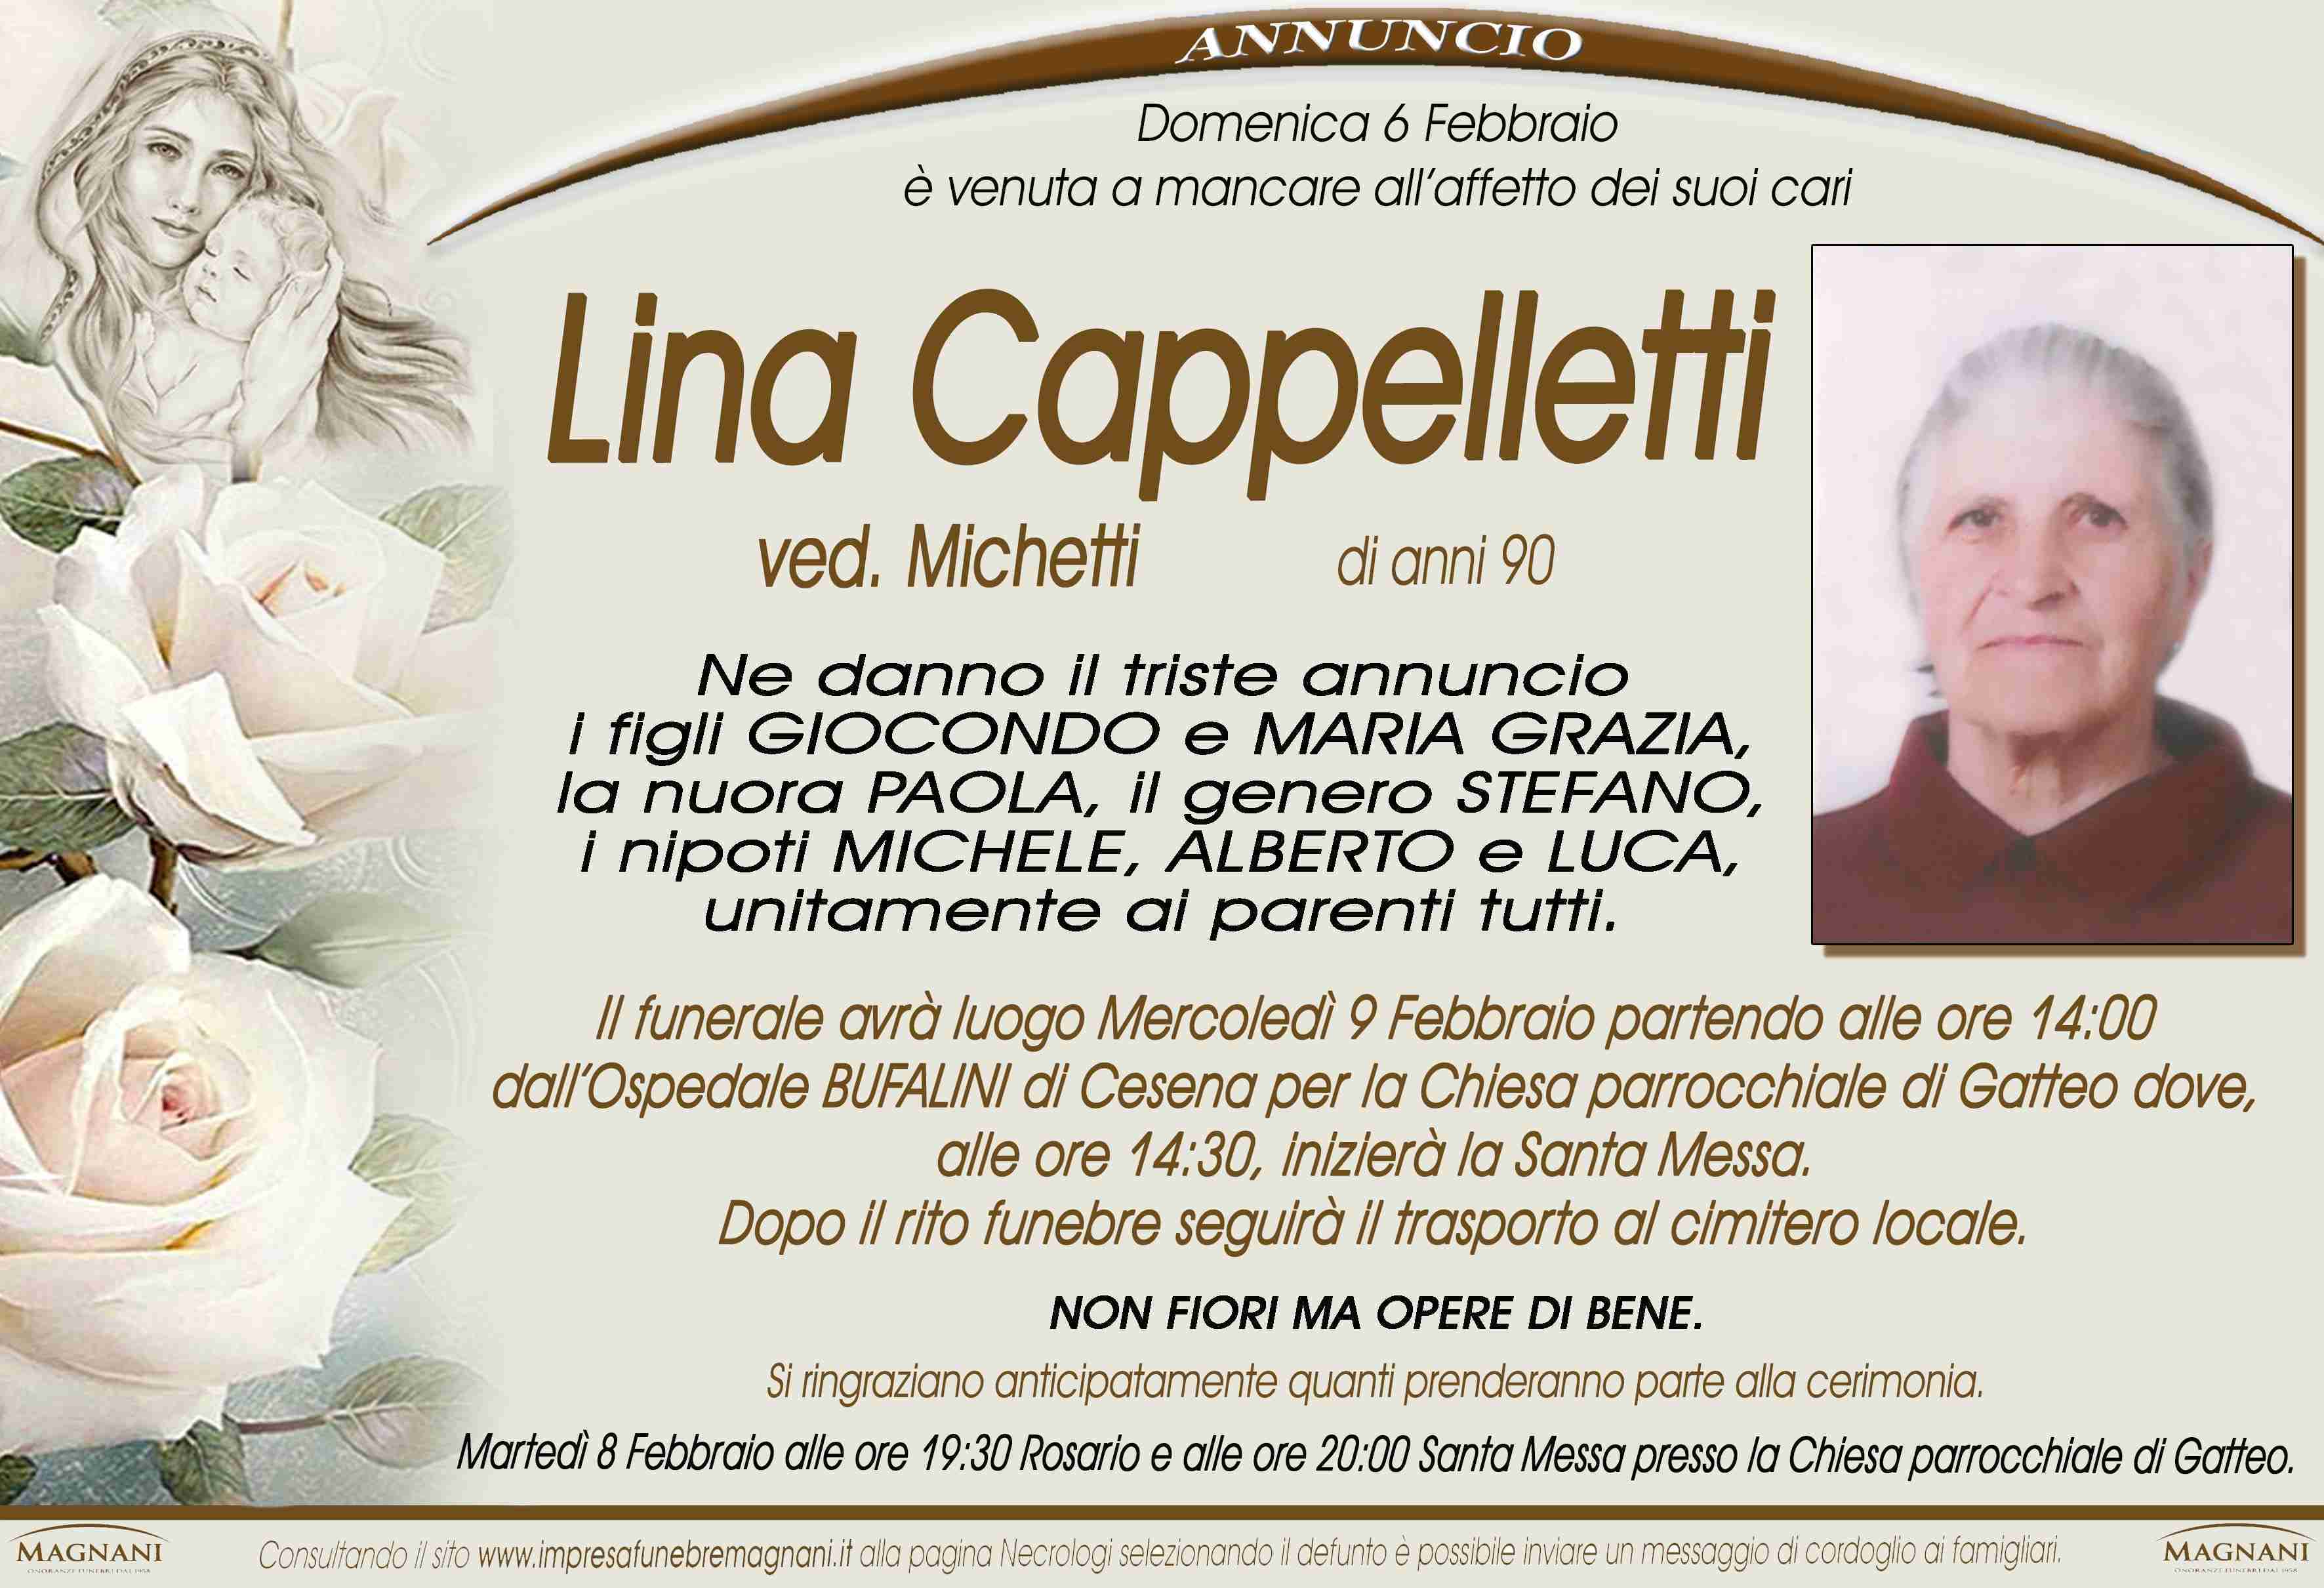 Lina Cappelletti